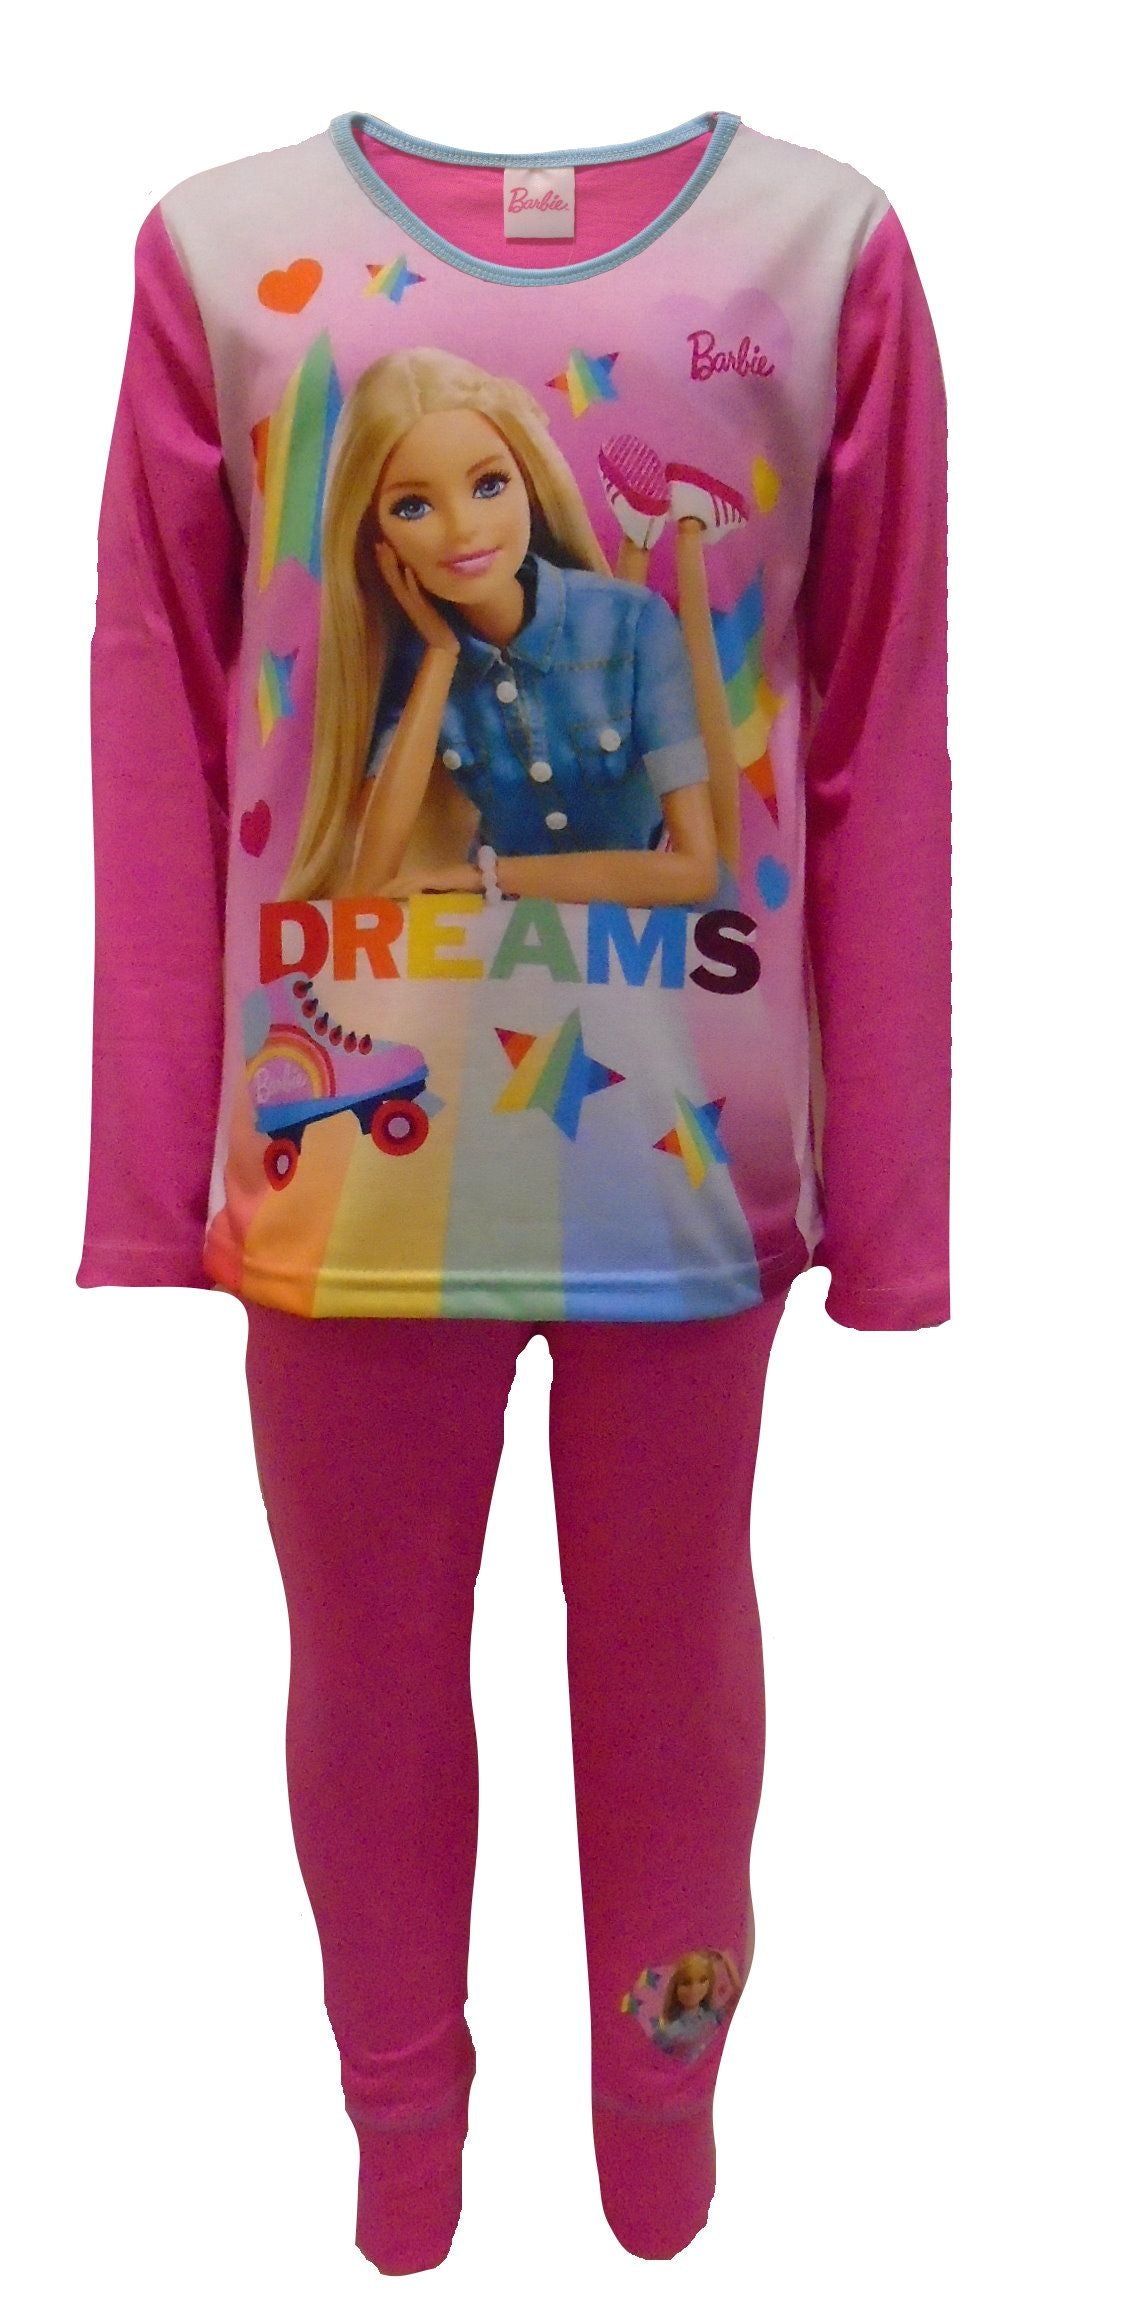 Barbie "Dreams" Girl's Pyjamas